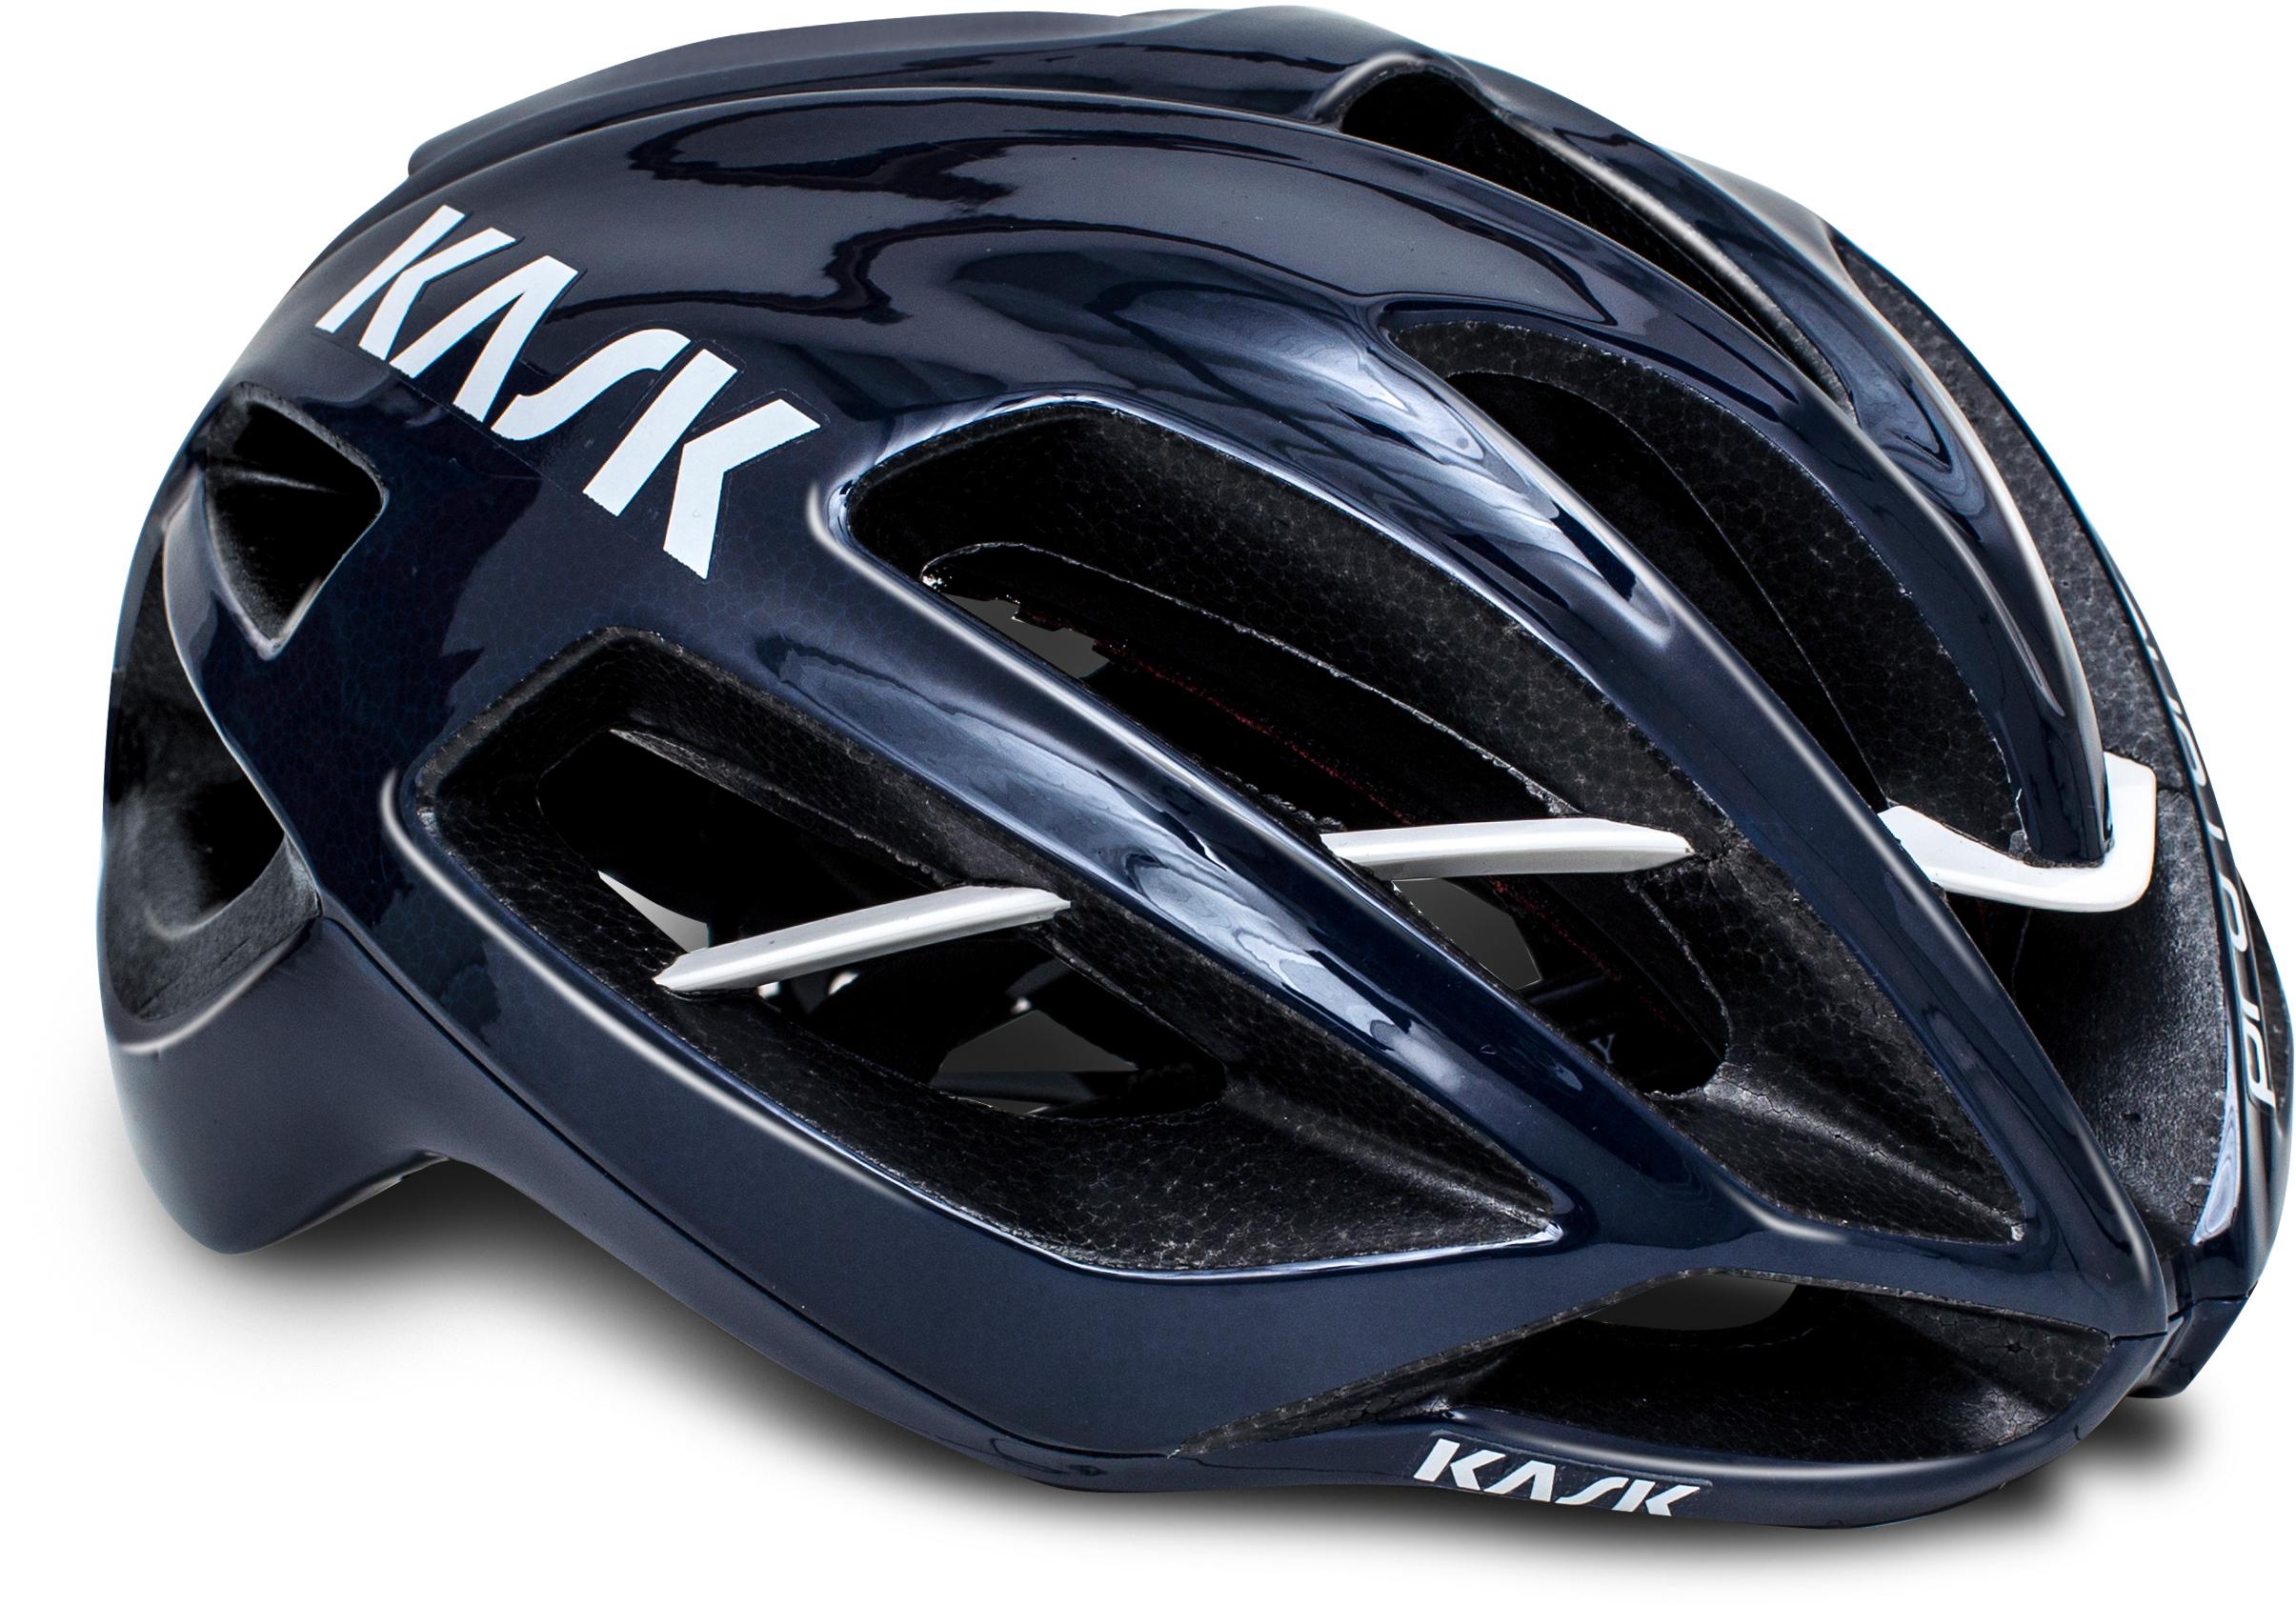 Kask Protone Wg11 Road Helmet, Matt Dark Blue, Medium